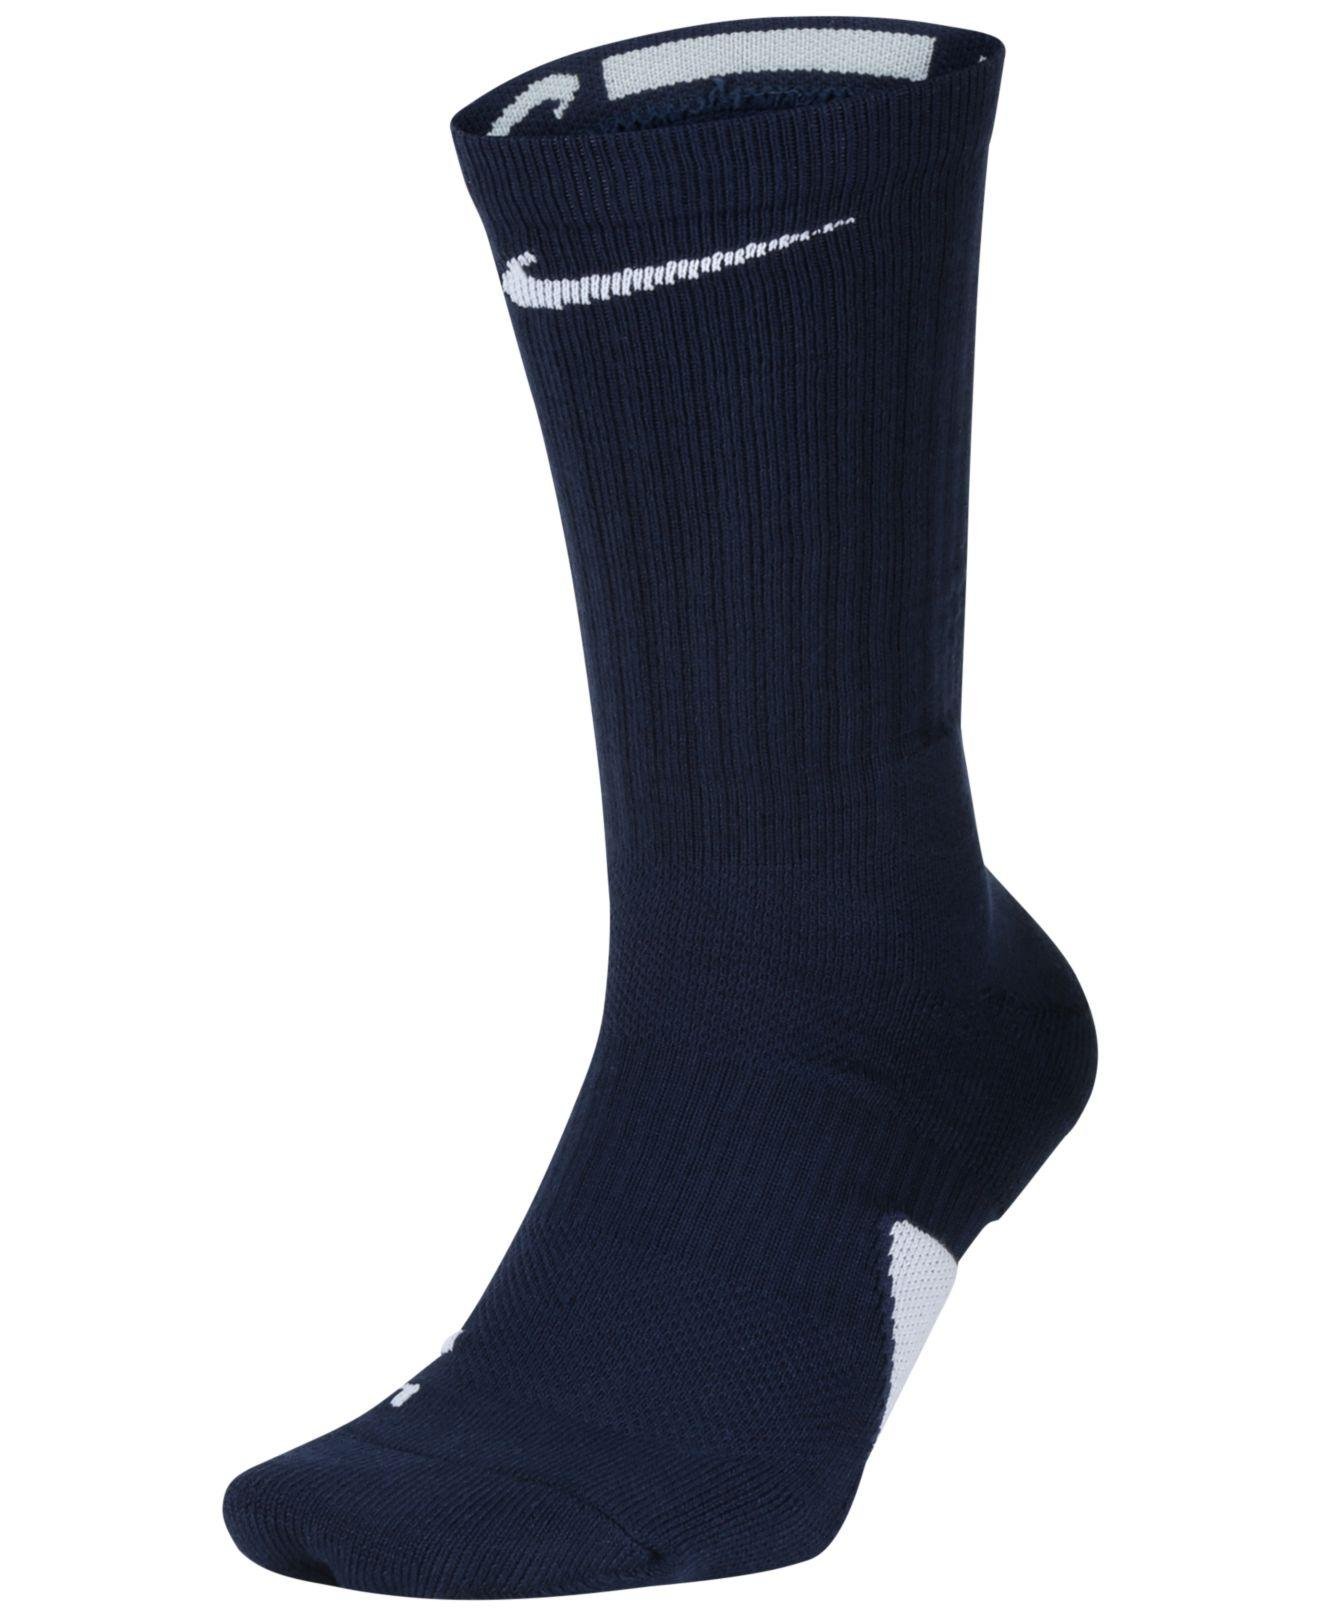 Nike Elite Crew Socks in Midnight Navy/White (Blue) for Men - Save 18% ...